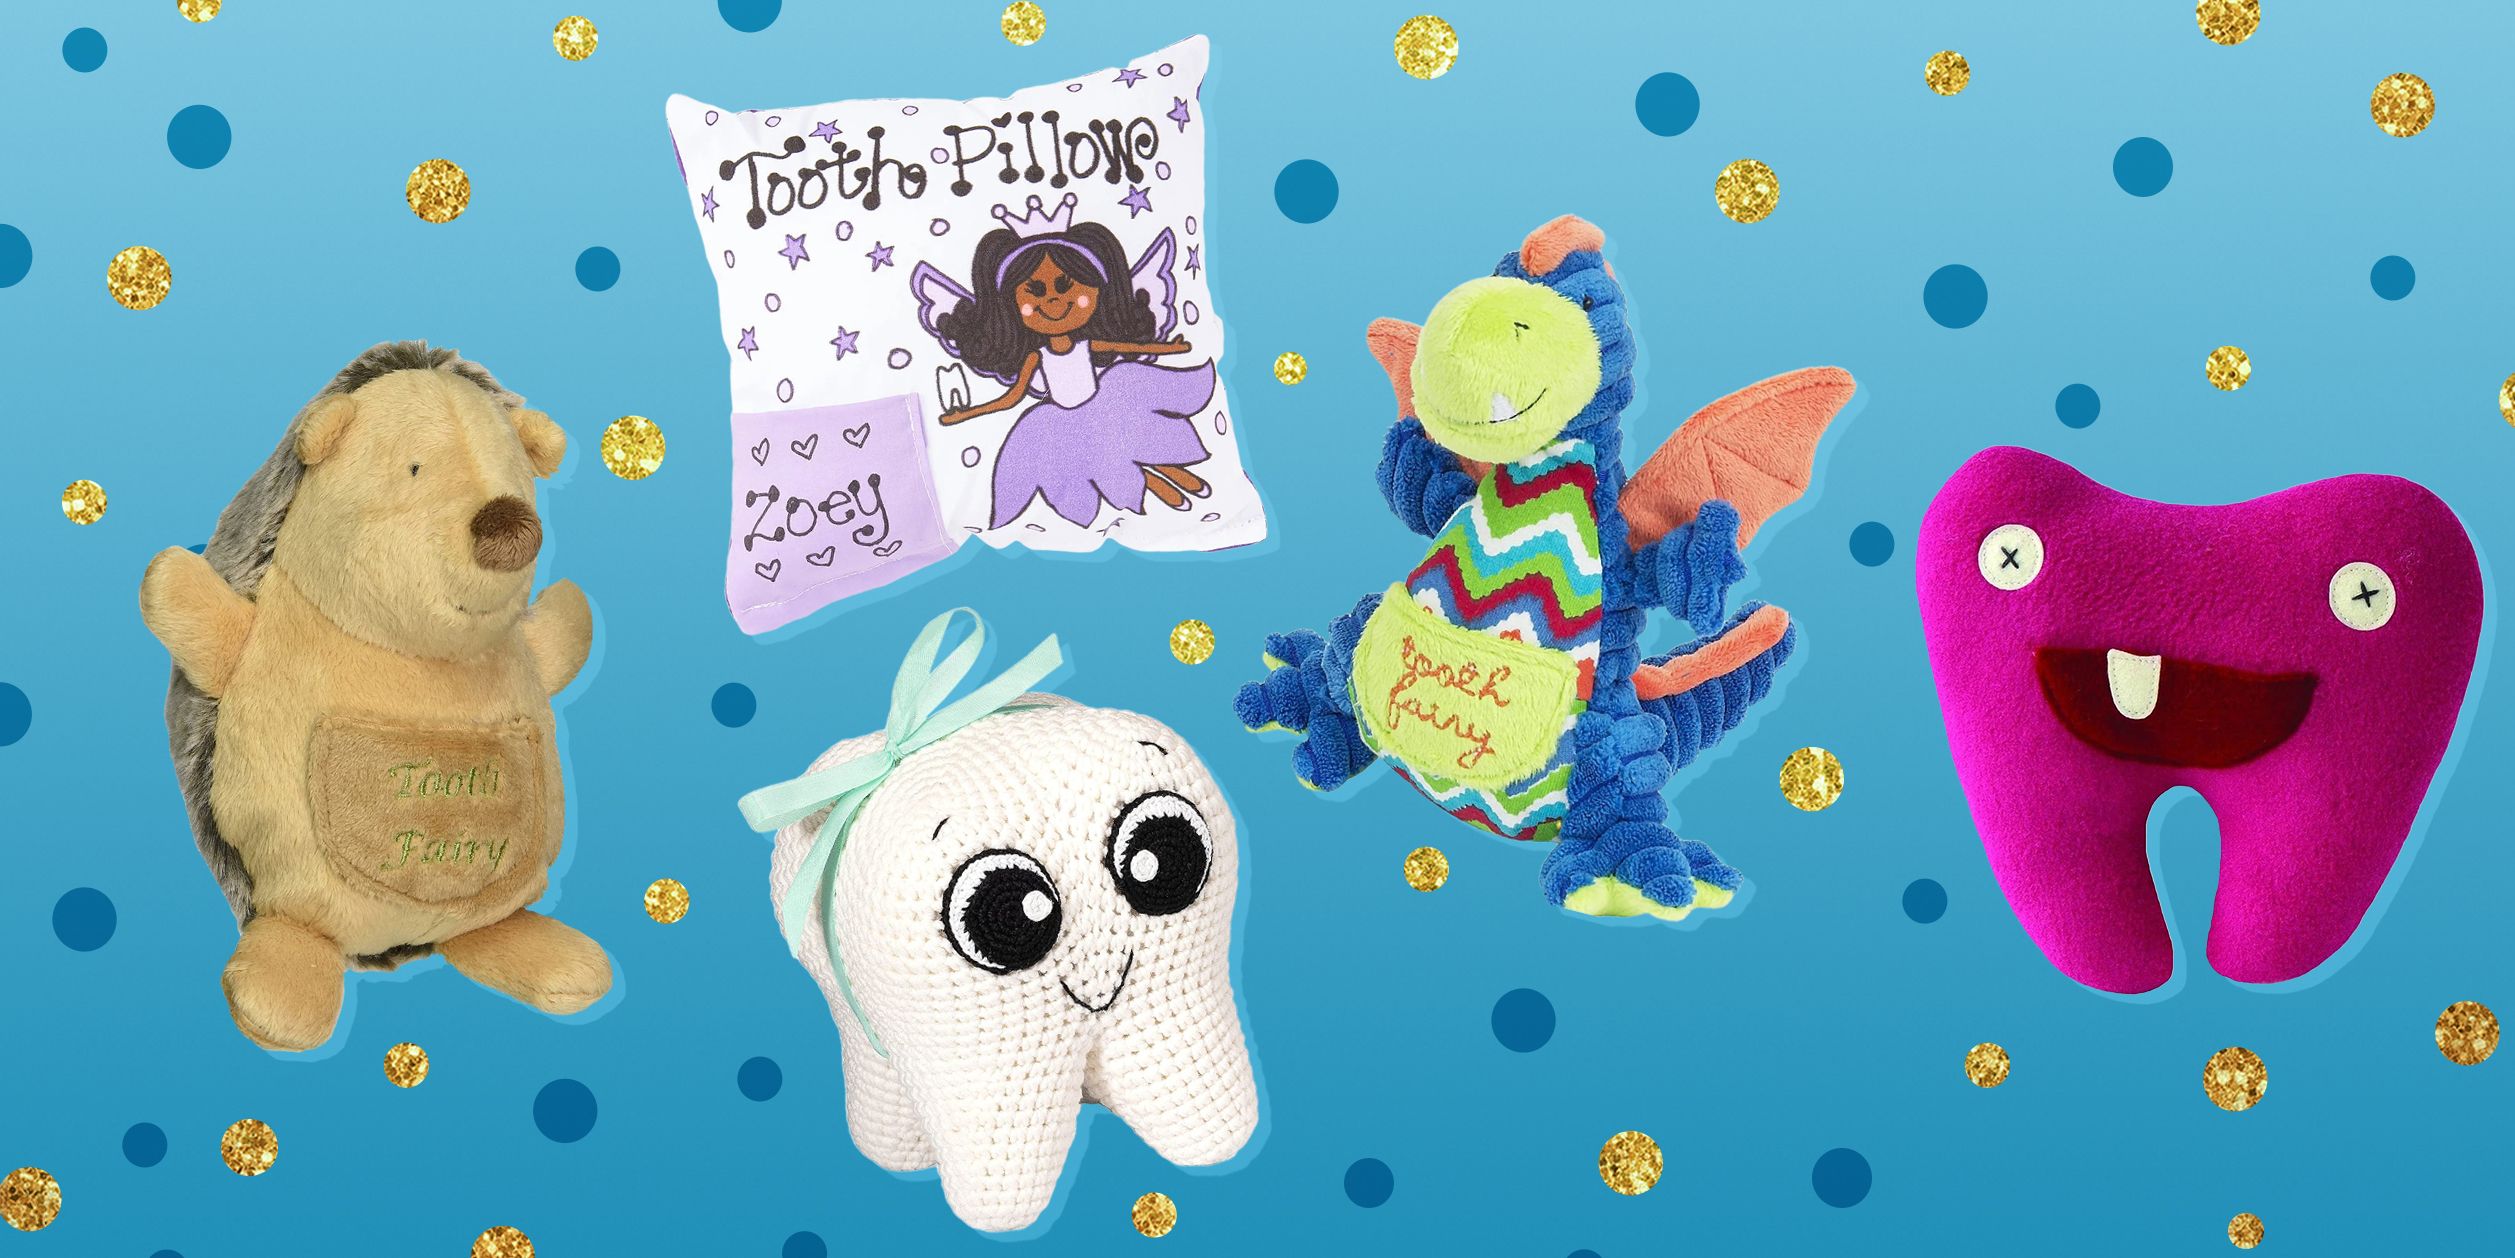 Kids' Tooth Fairy Pillow Blue - Pillowfort™